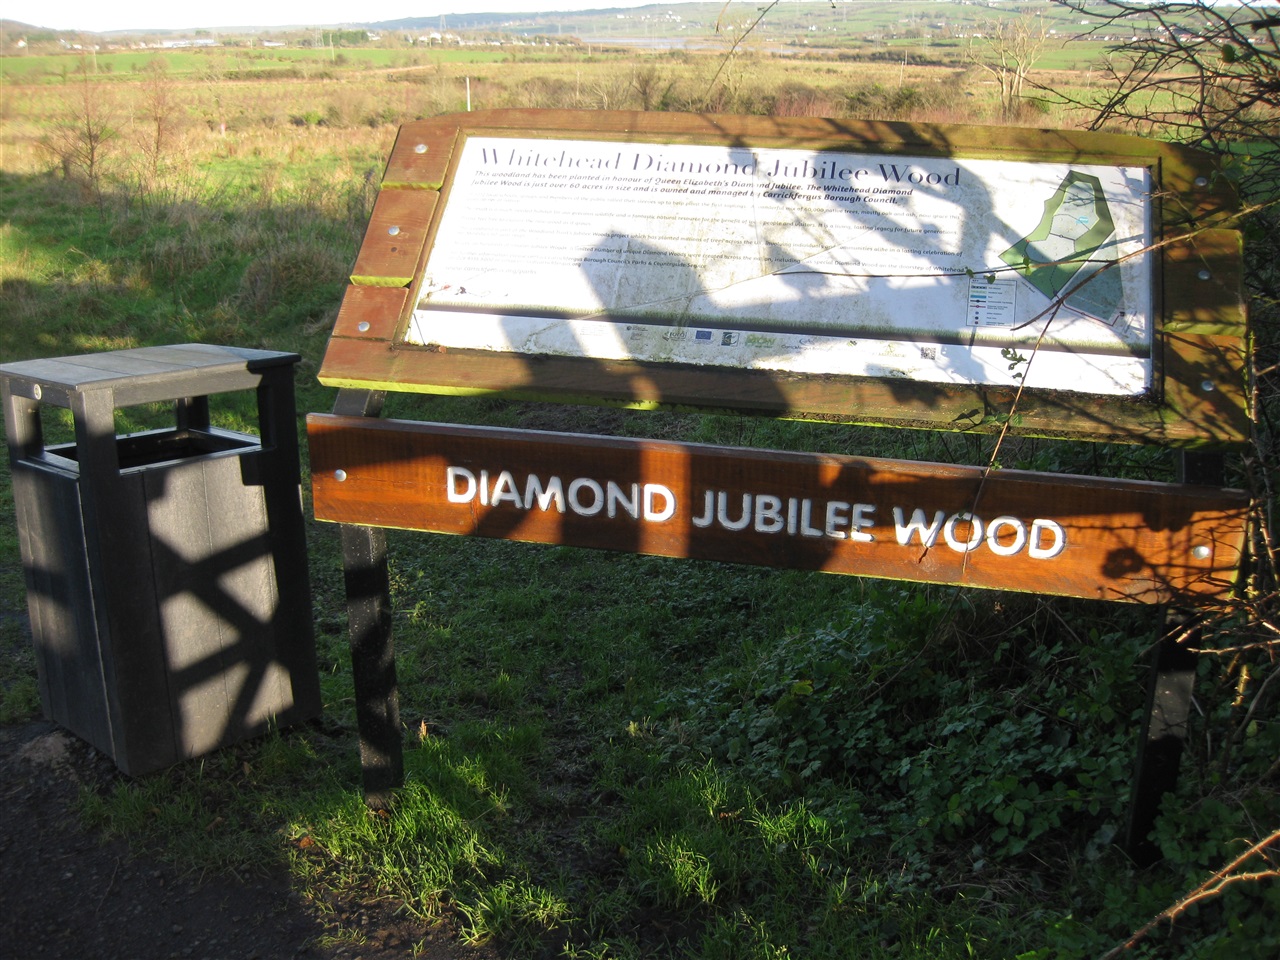 Whitehead Diamond Jubilee Wood